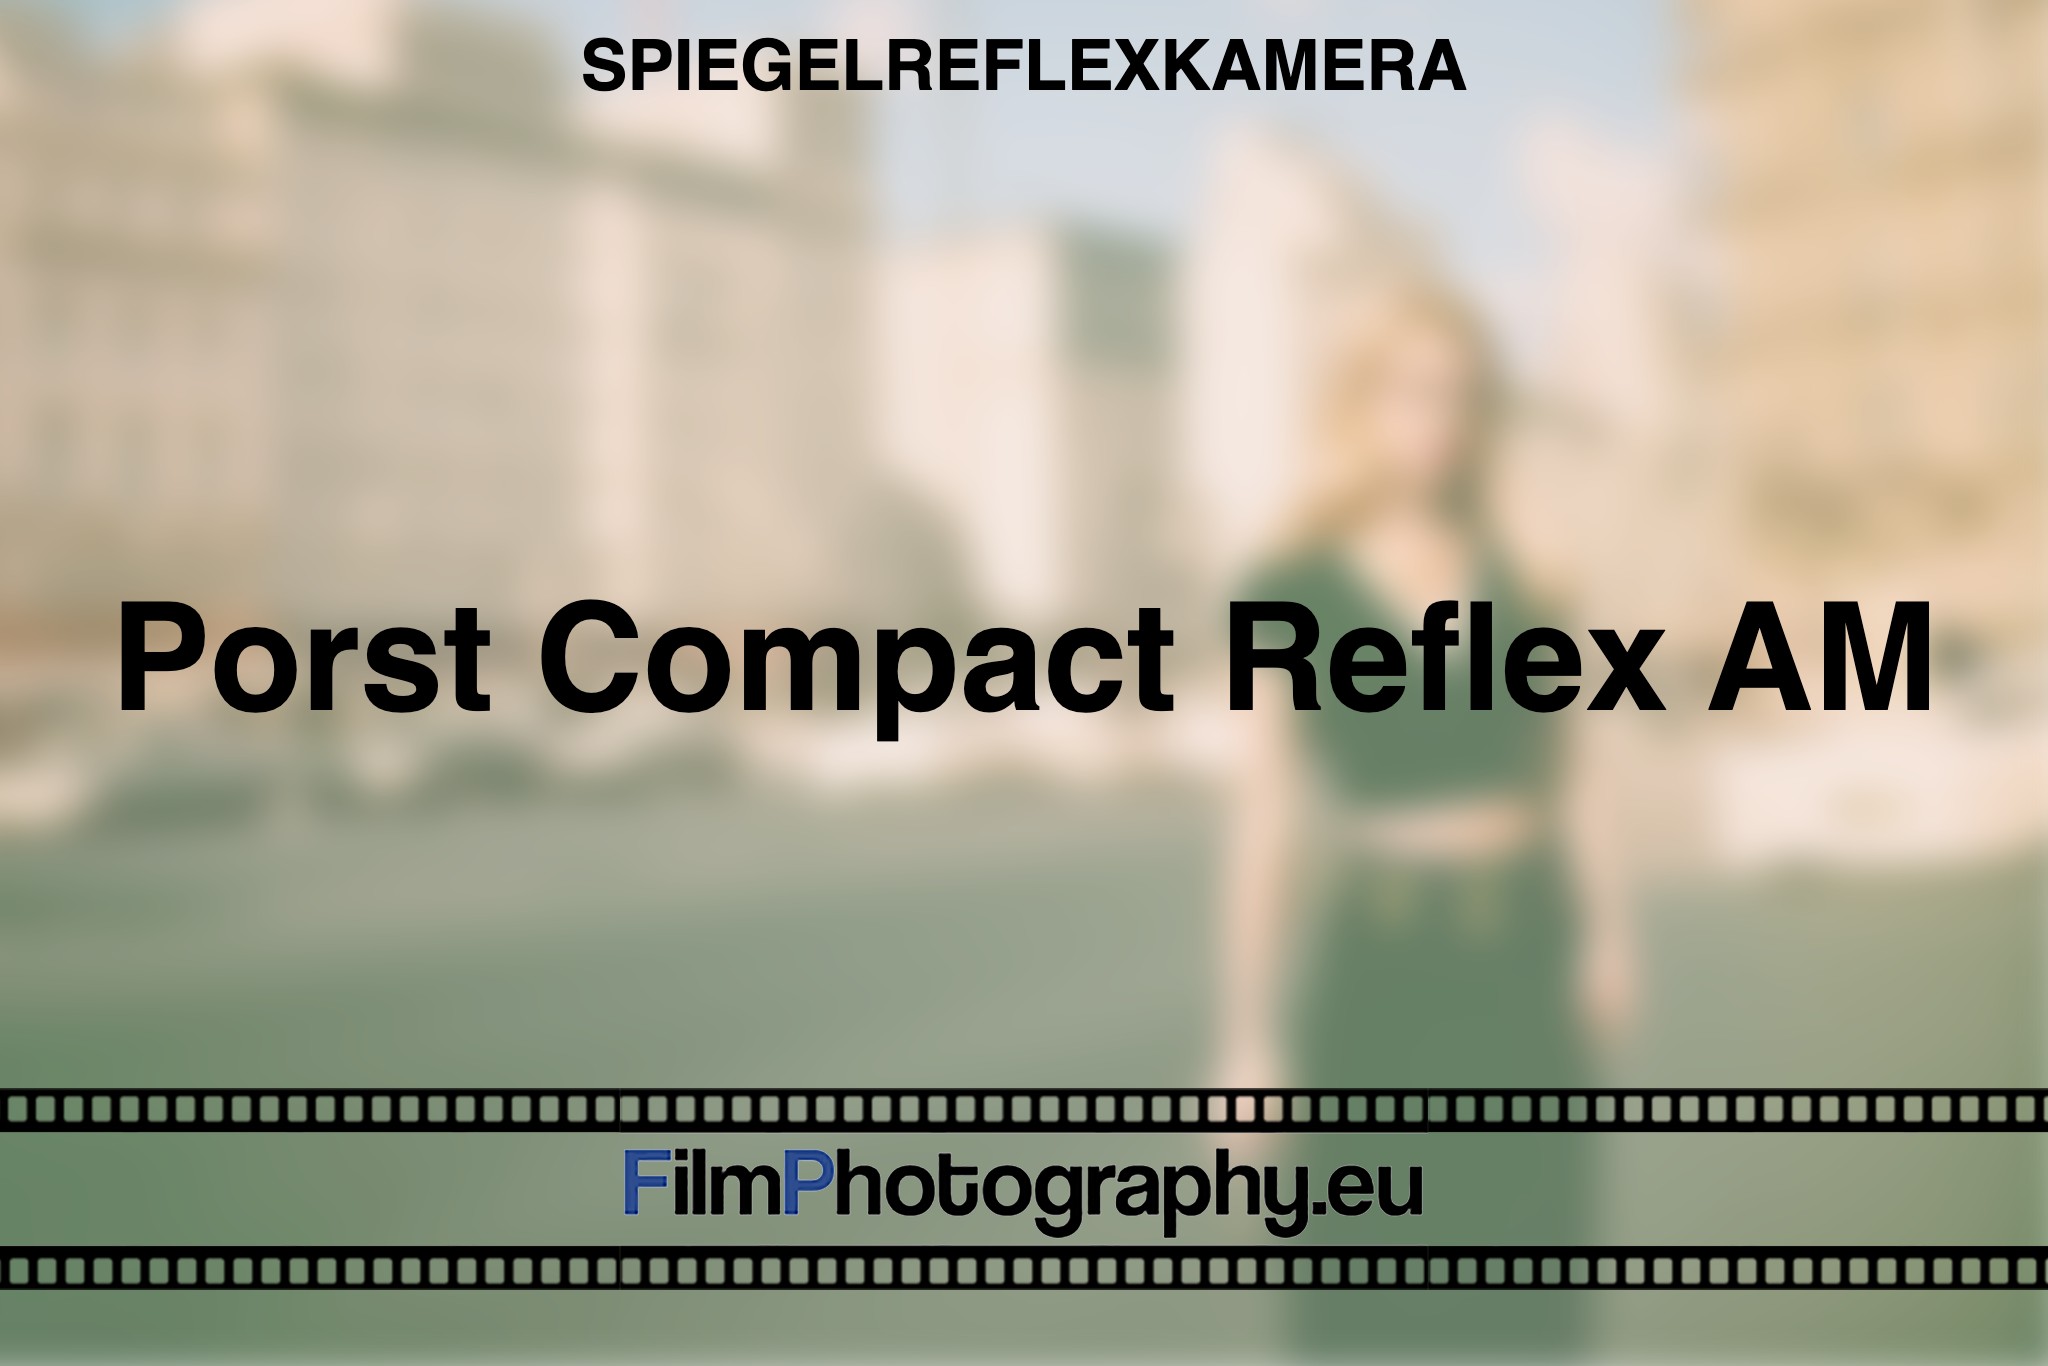 porst-compact-reflex-am-spiegelreflexkamera-bnv